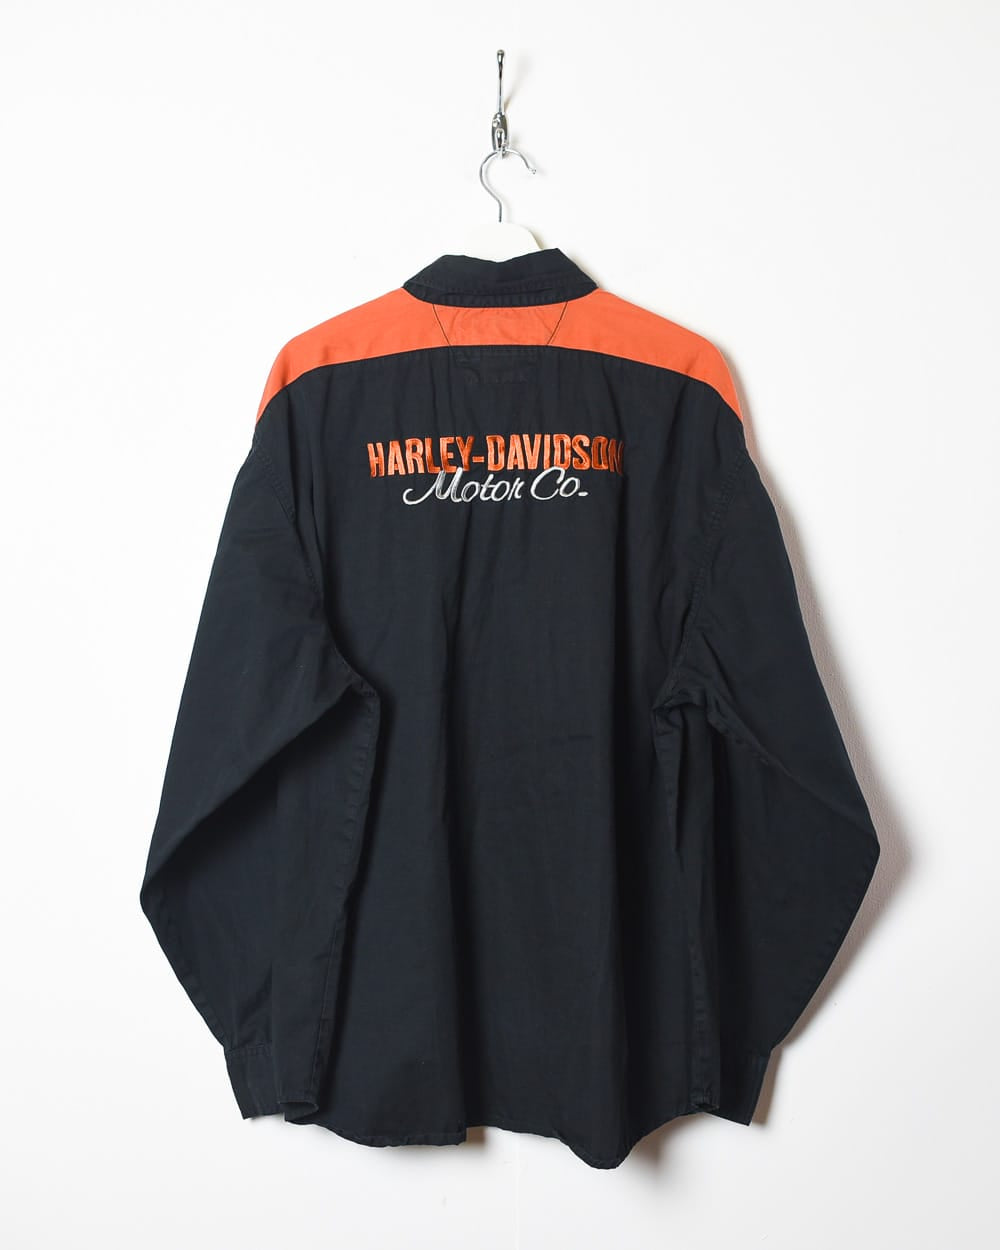 Black Harley Davidson Shirt - XX-Large